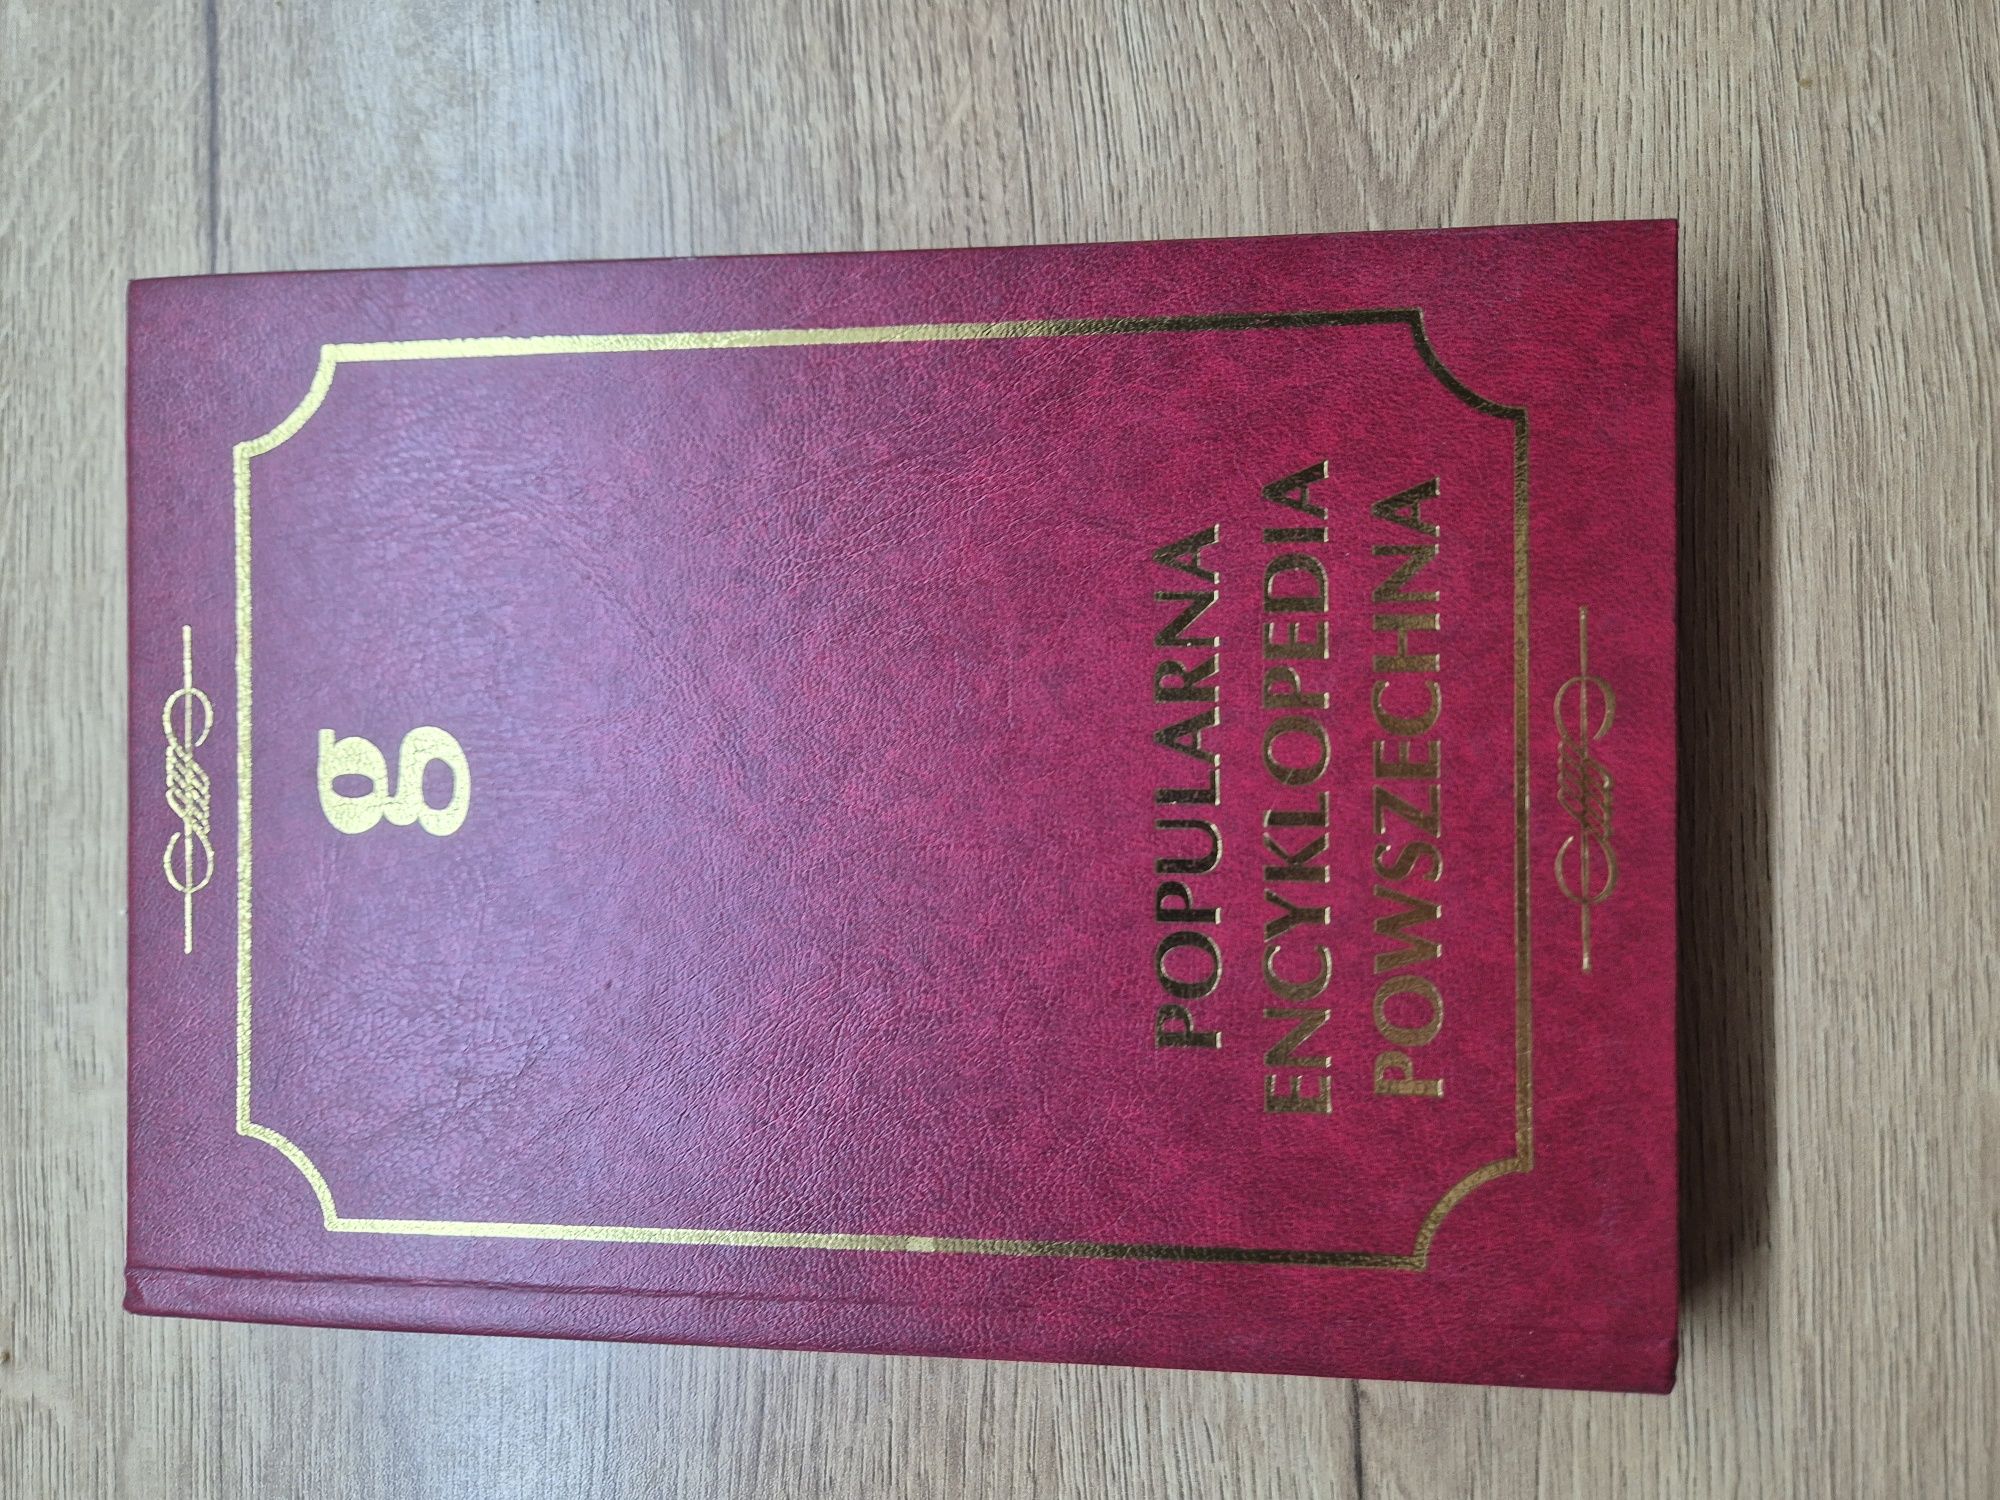 Popularna encyklopedia powszechna kompletny zestaw wydanie 1995 20 szt